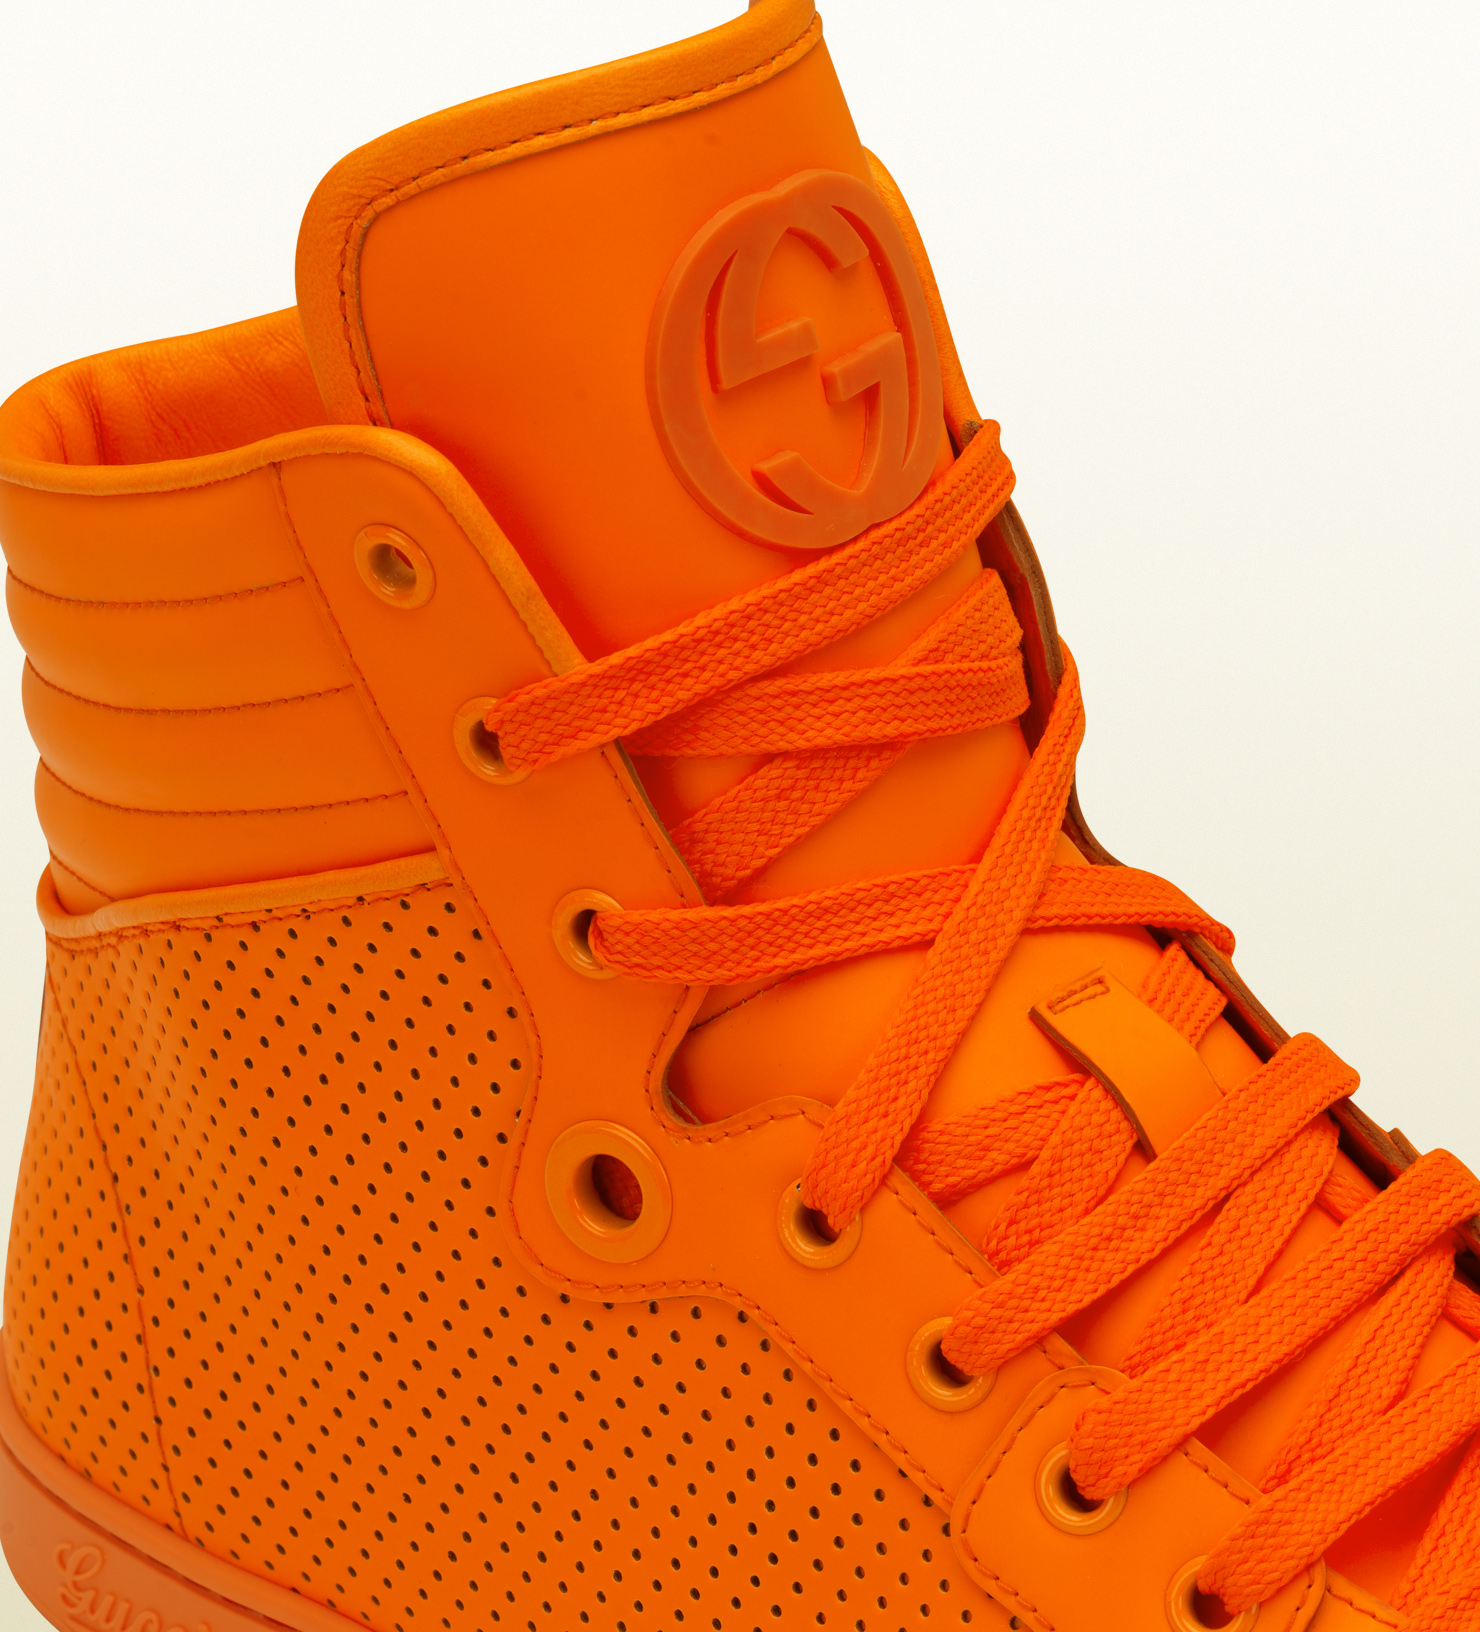 neon orange sneakers